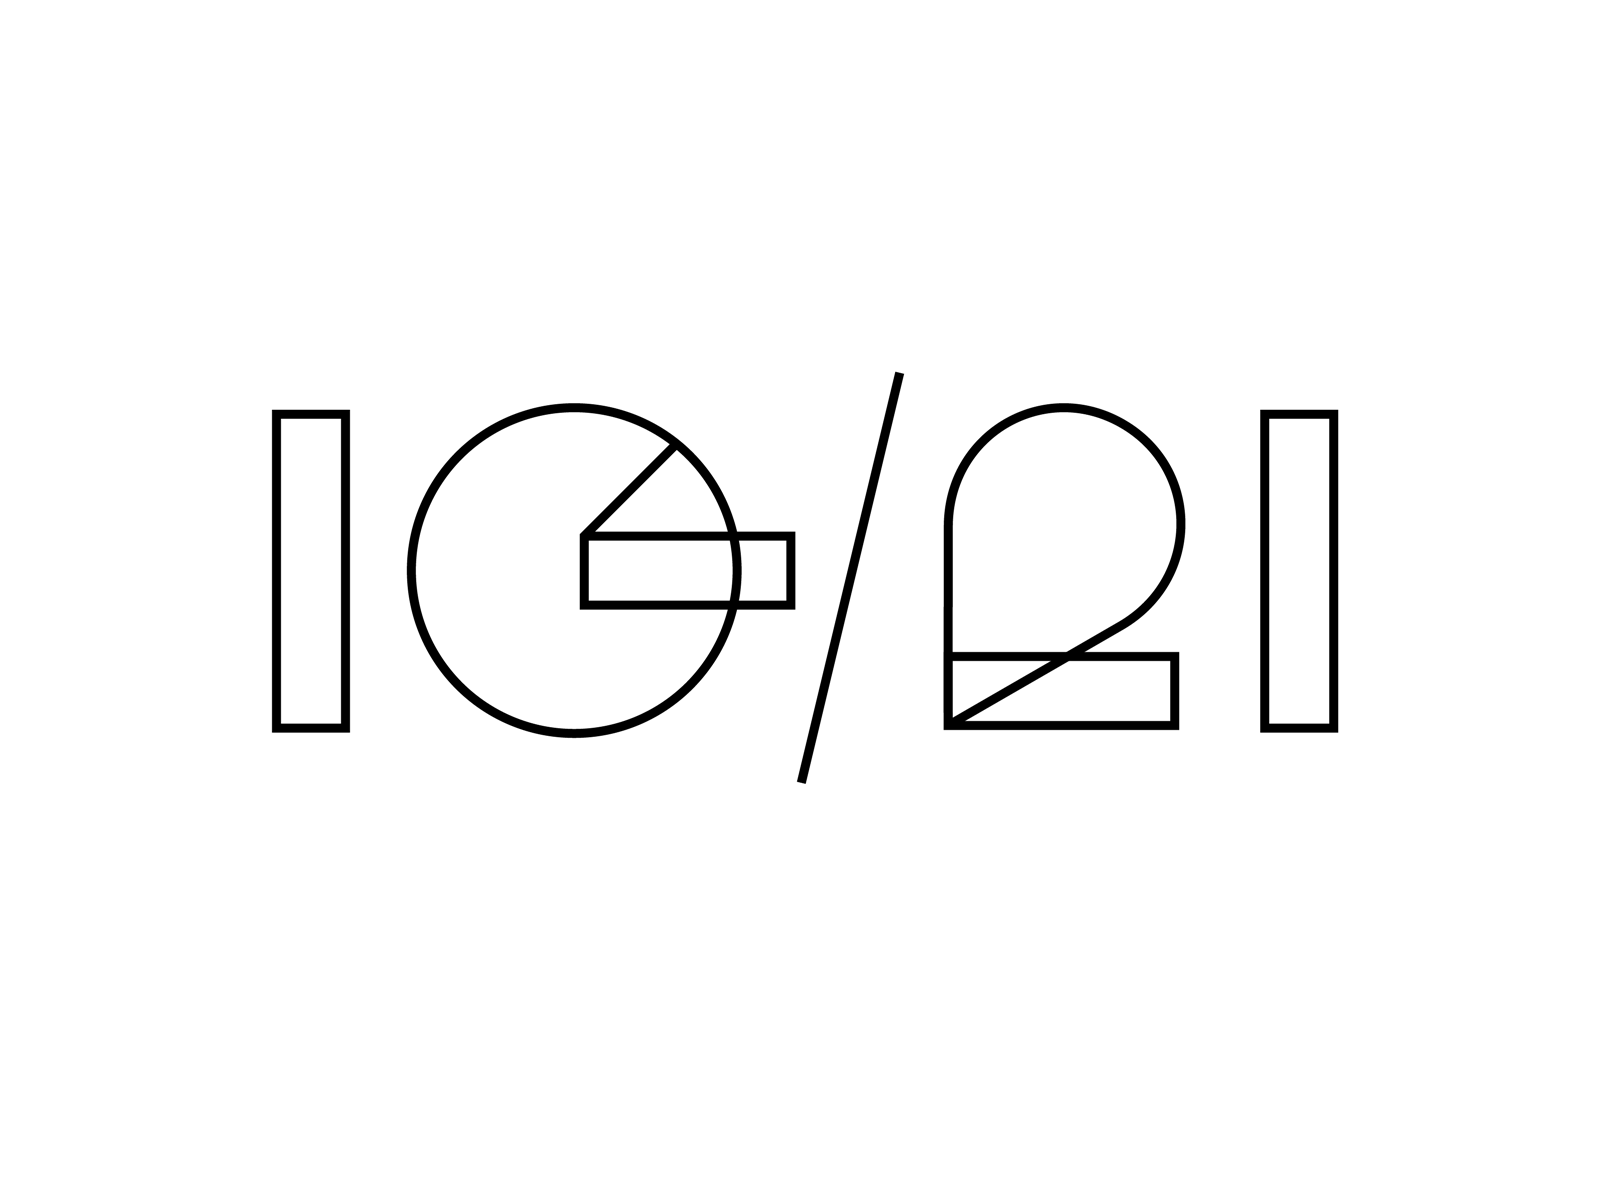 IG/21 Type Study branding event graphic design logo typography